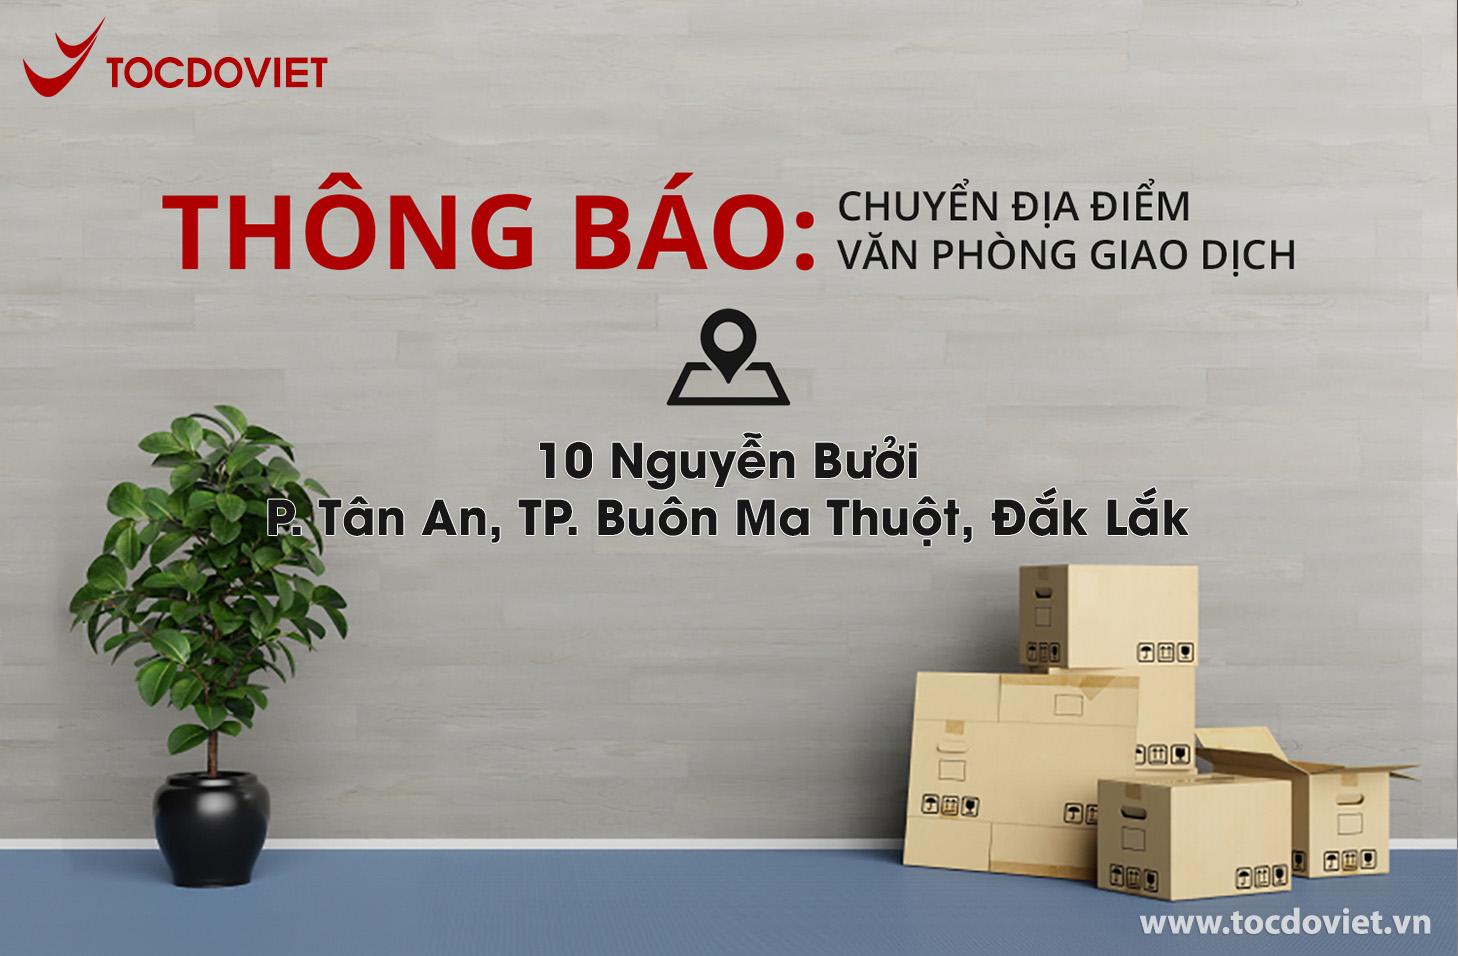 Thông báo chuyển địa điểm văn phòng giao dịch Tốc Độ Việt